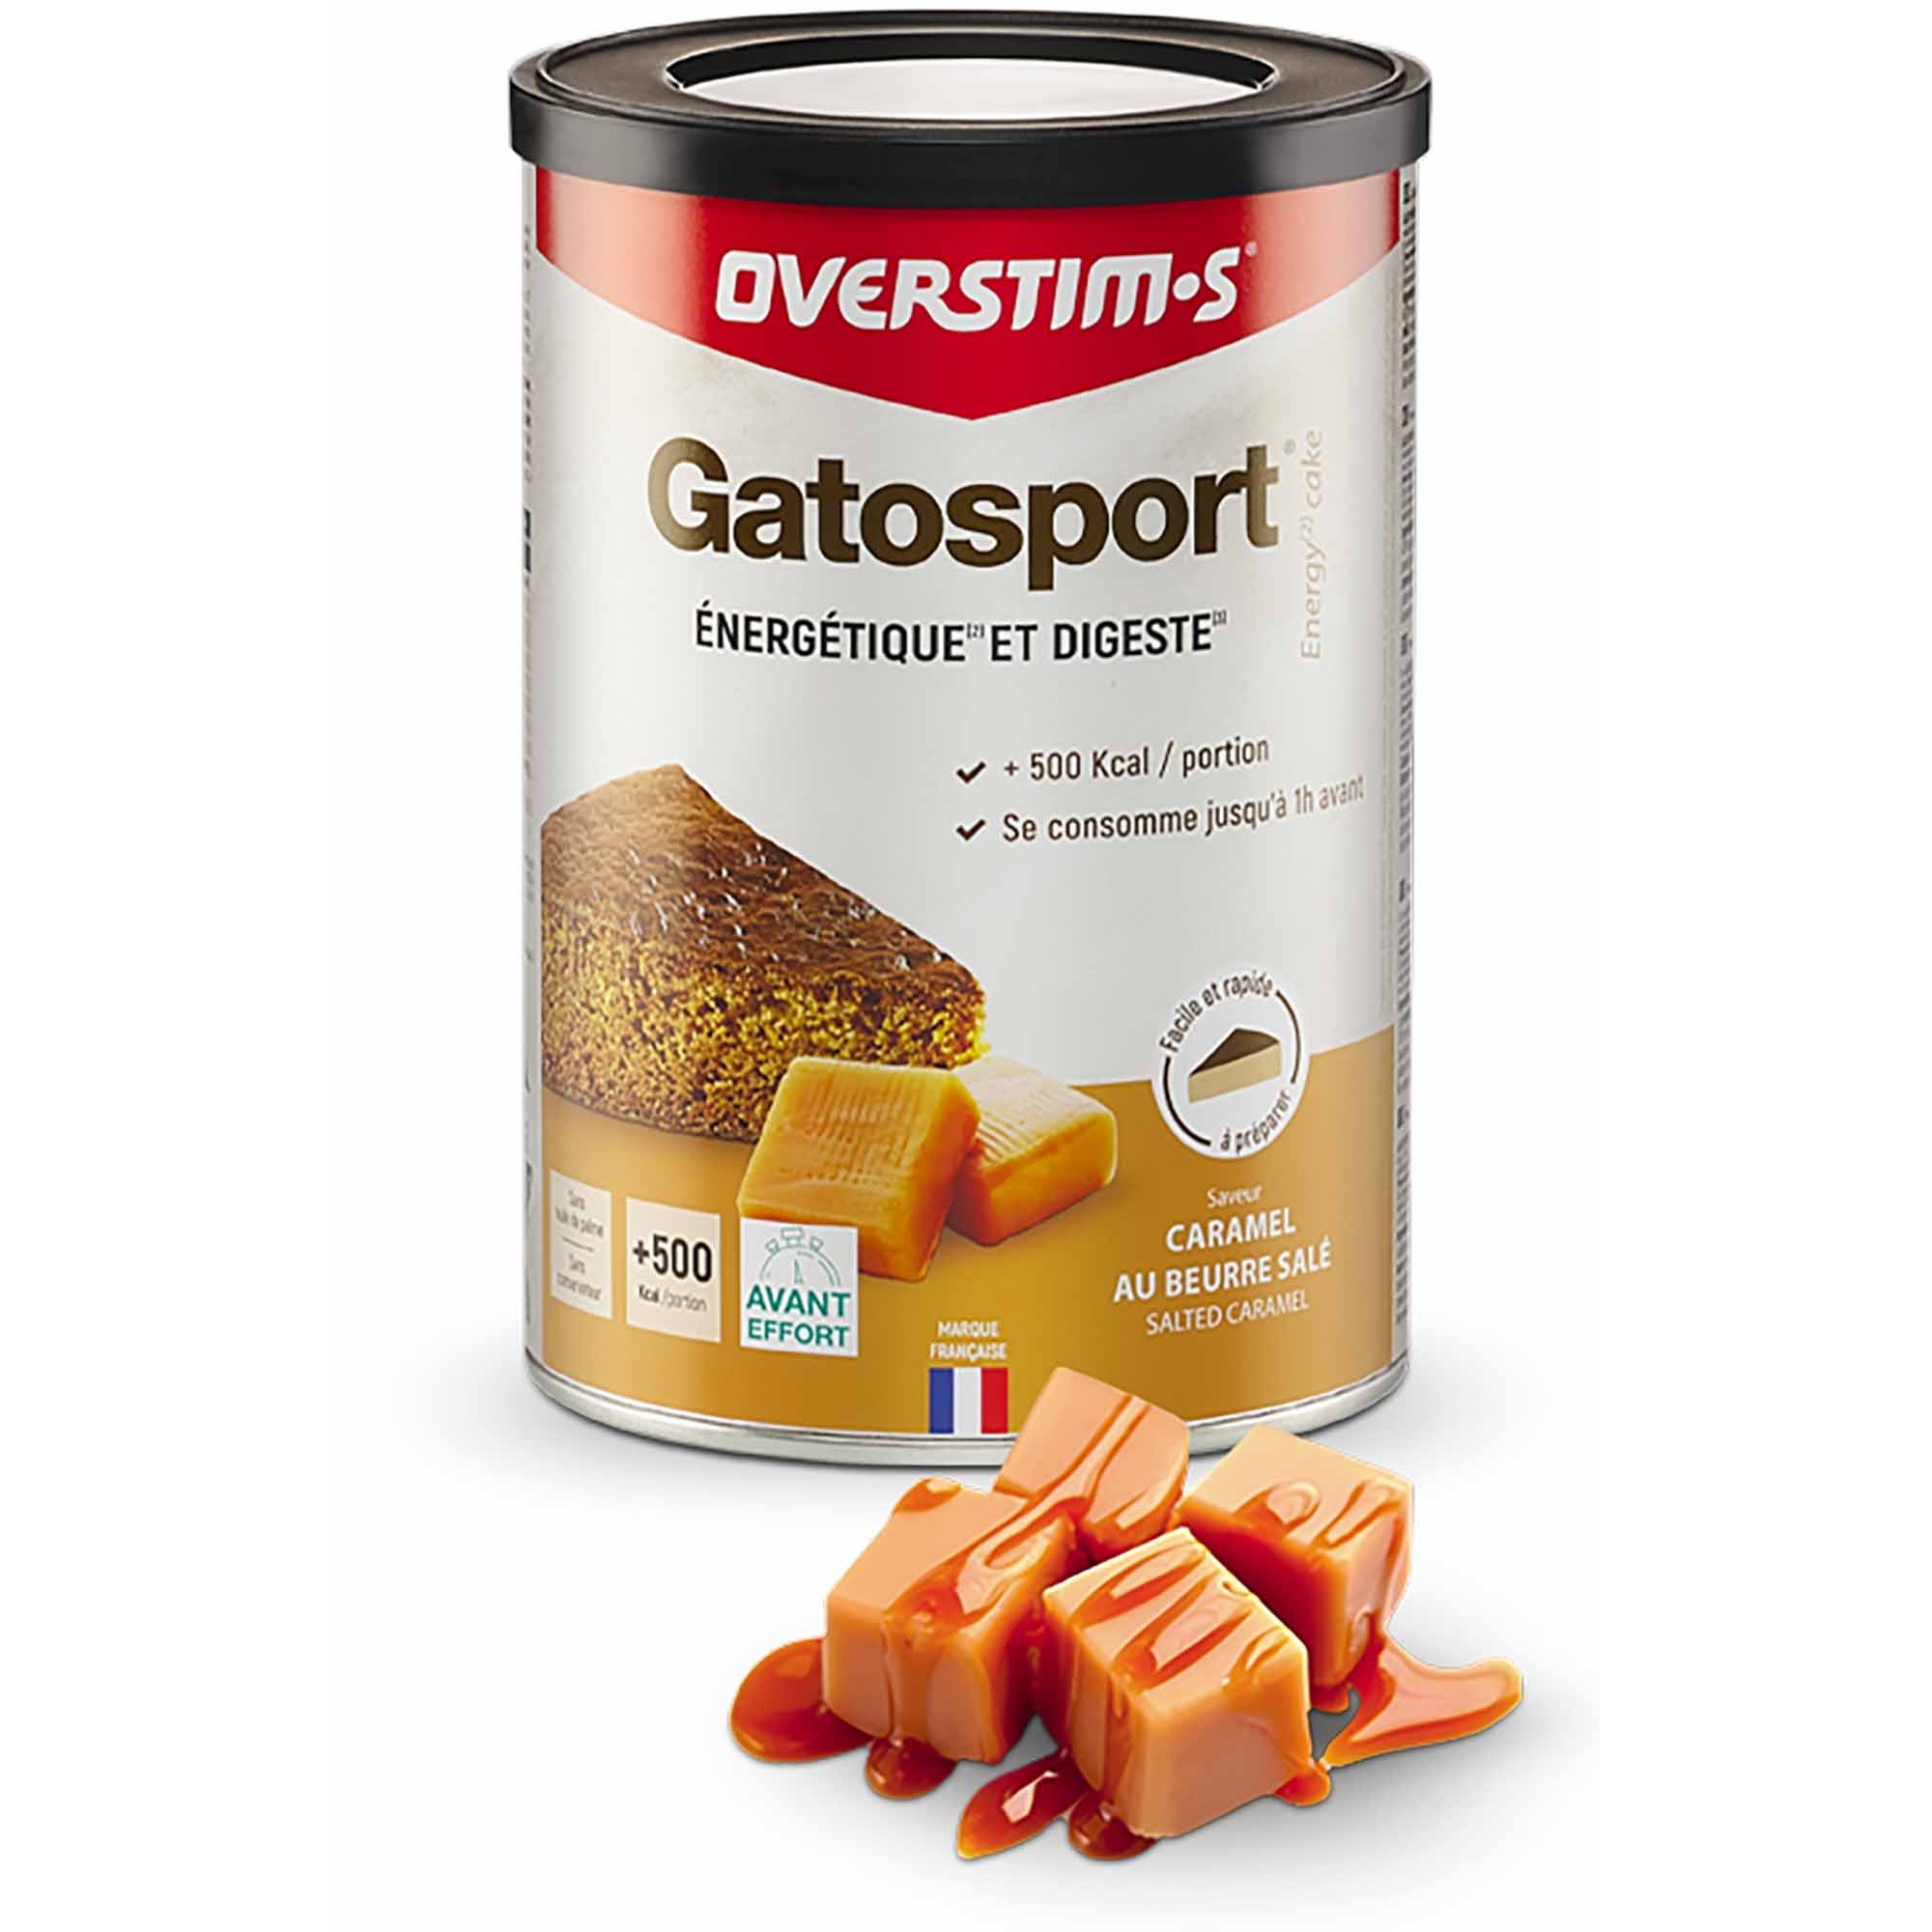 Gatosport Caramel beurre salé OVERSTIMS